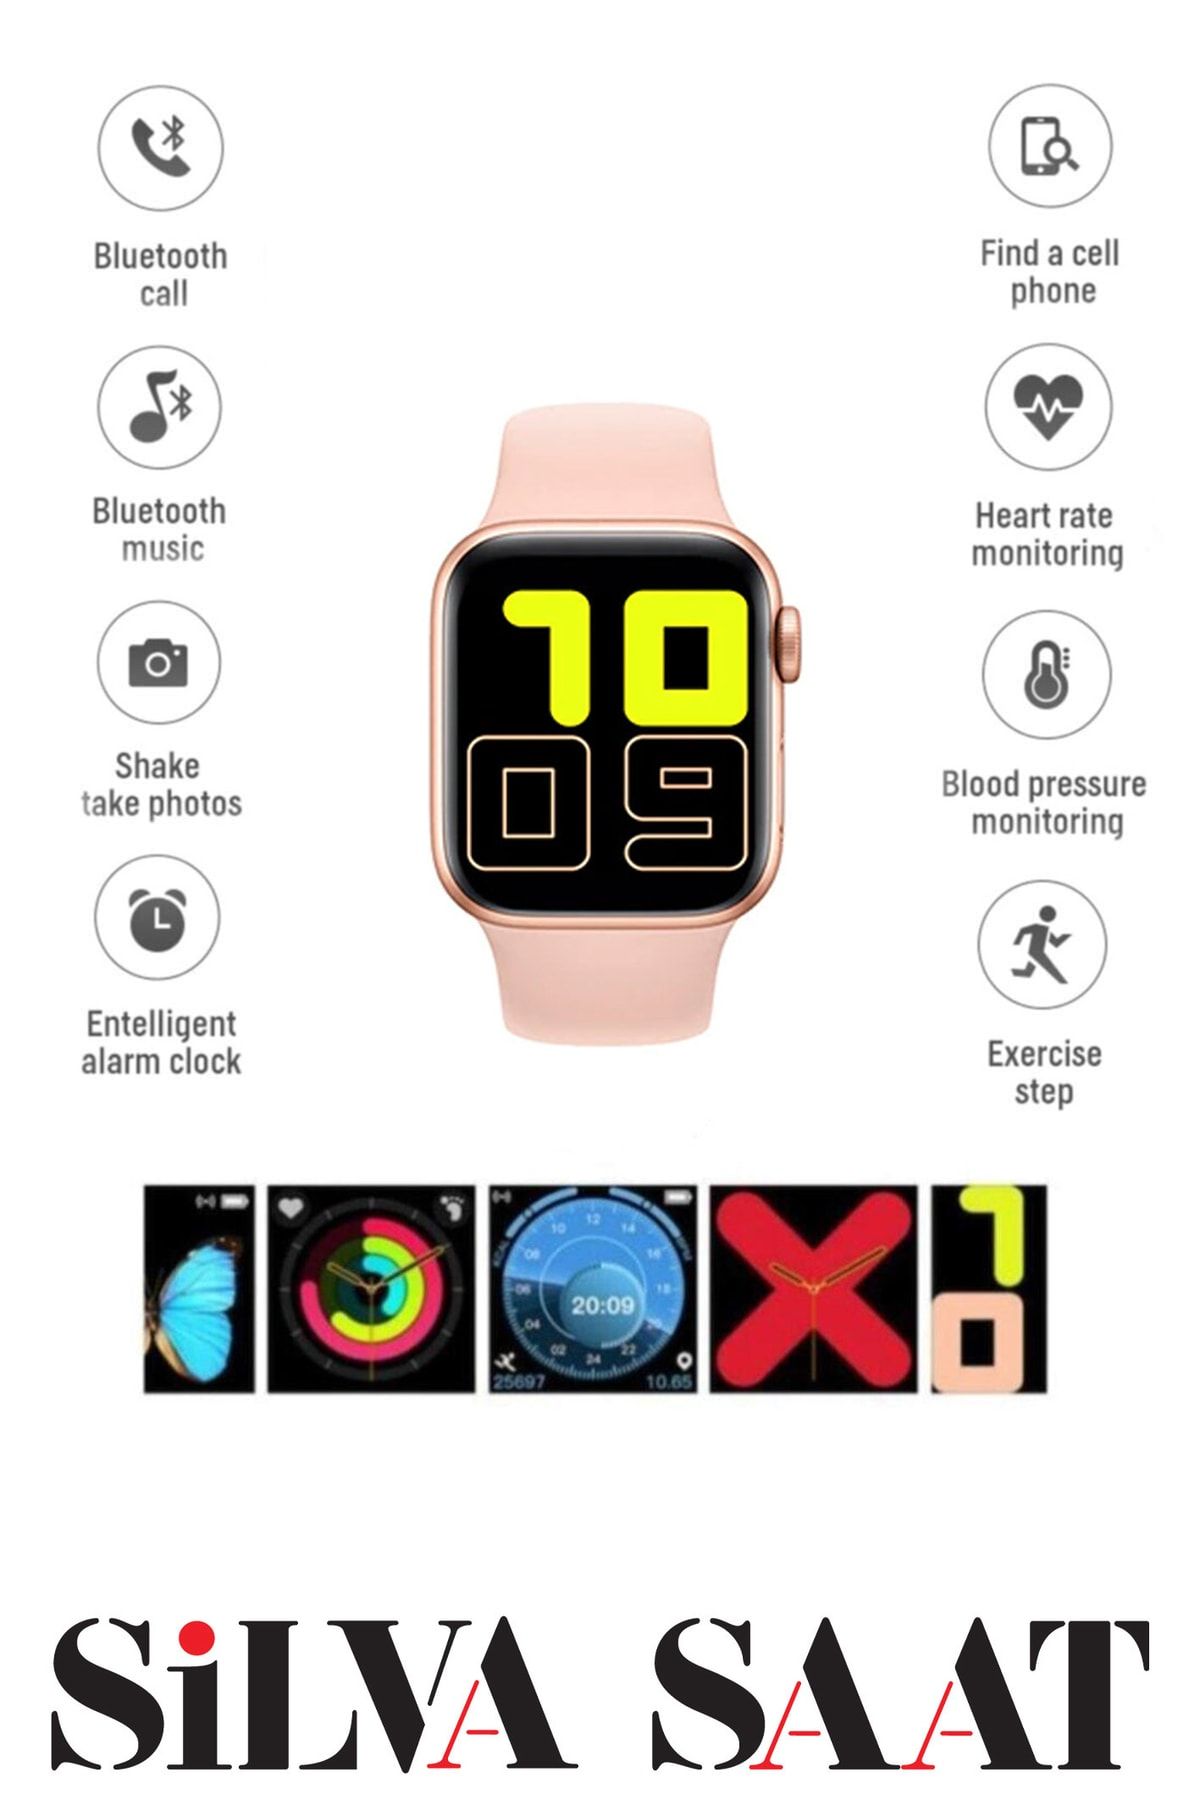 TECHNOMEN S-t500 Akıllı Saat Son Sürüm Smart Watch Türkçe Menülü Arama Cevaplama Konuşma Özelliği Ios Android